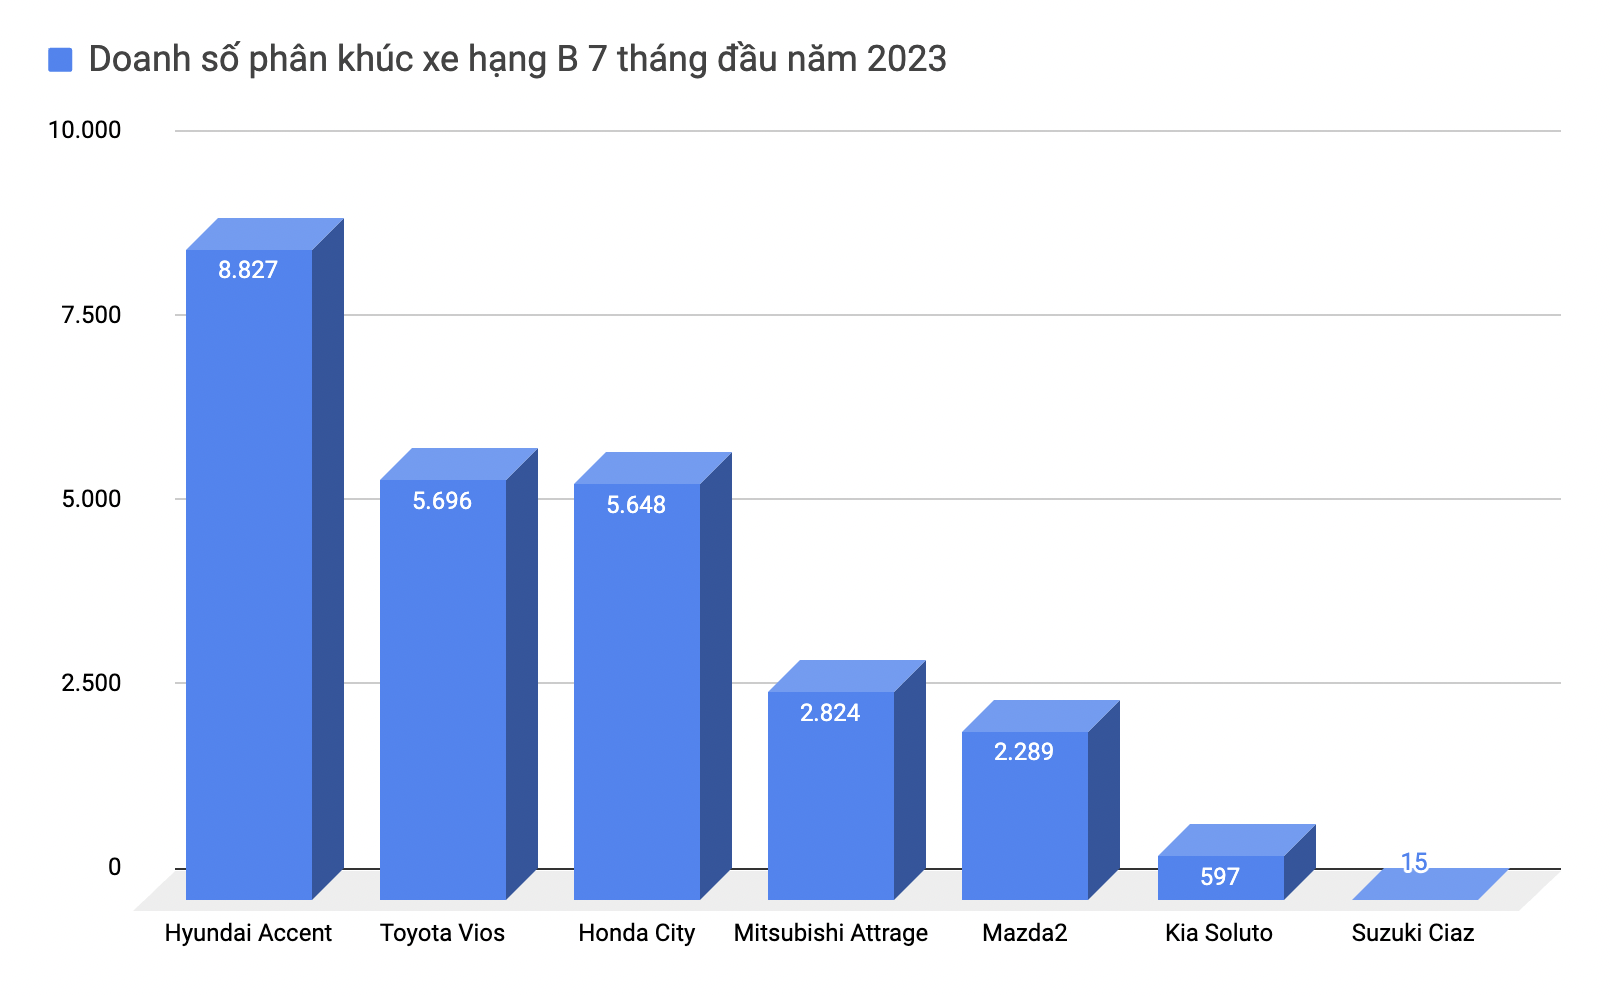 Hyundai Accent áp đảo doanh số, dễ trở thành sedan bán chạy nhất Việt Nam năm 2023 - Ảnh 3.